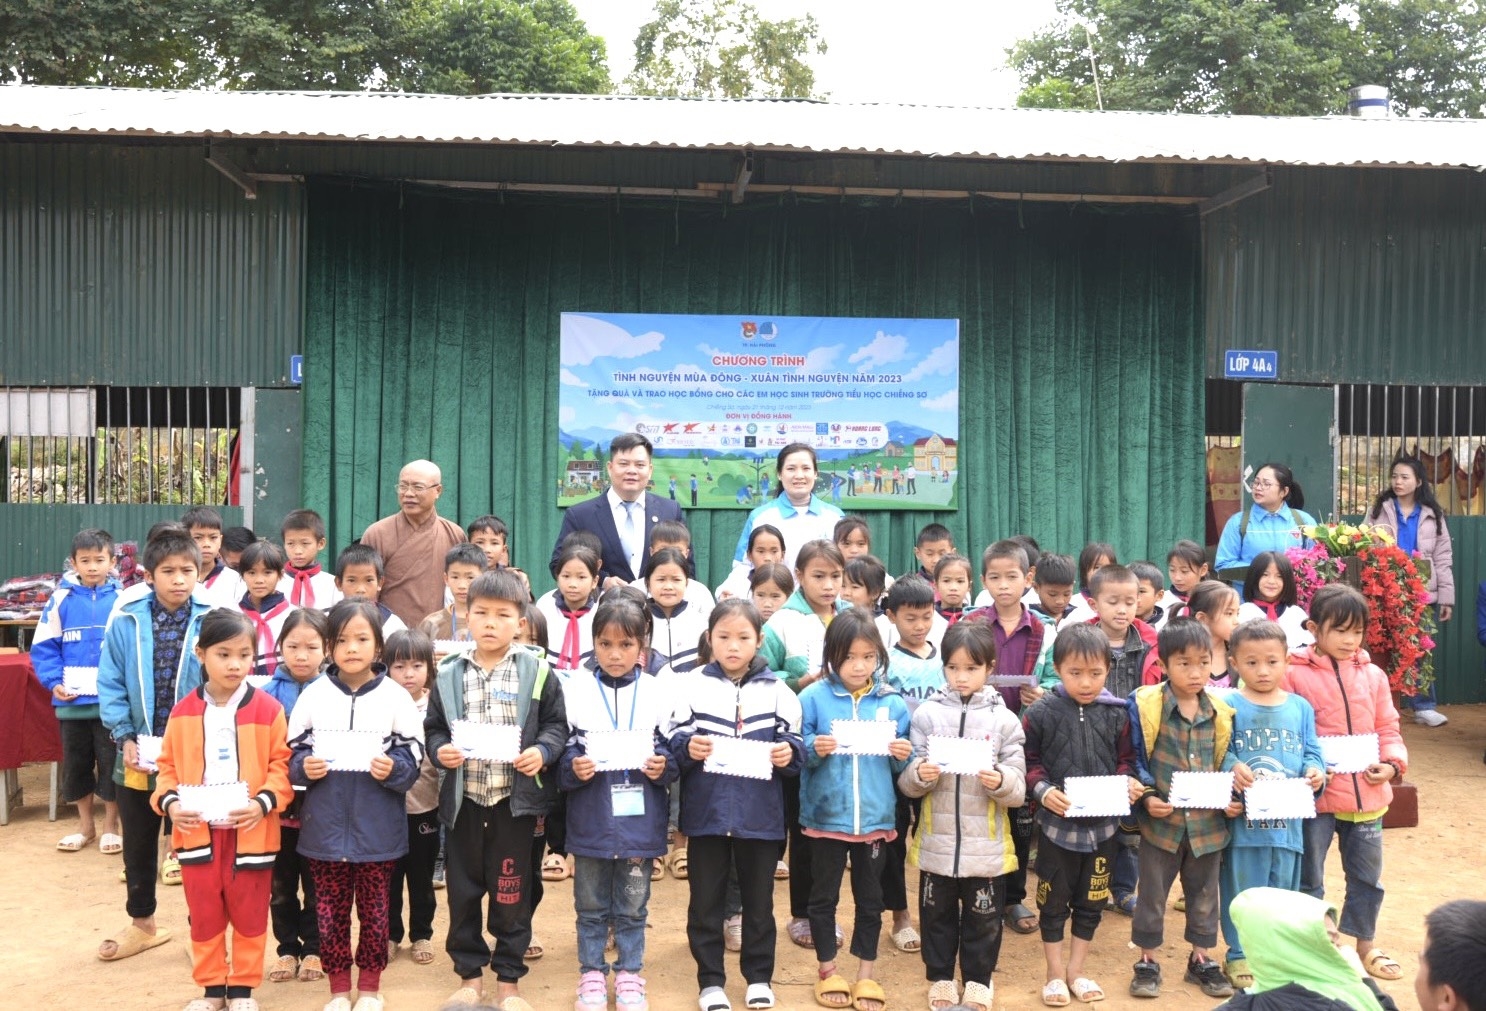 Ông Hà Tuấn Anh - Chủ tịch Hội đồng quản trị Tập đoàn Tài Anh cùng Đoàn thiện nguyện trao tặng học bổng cho các em học sinh